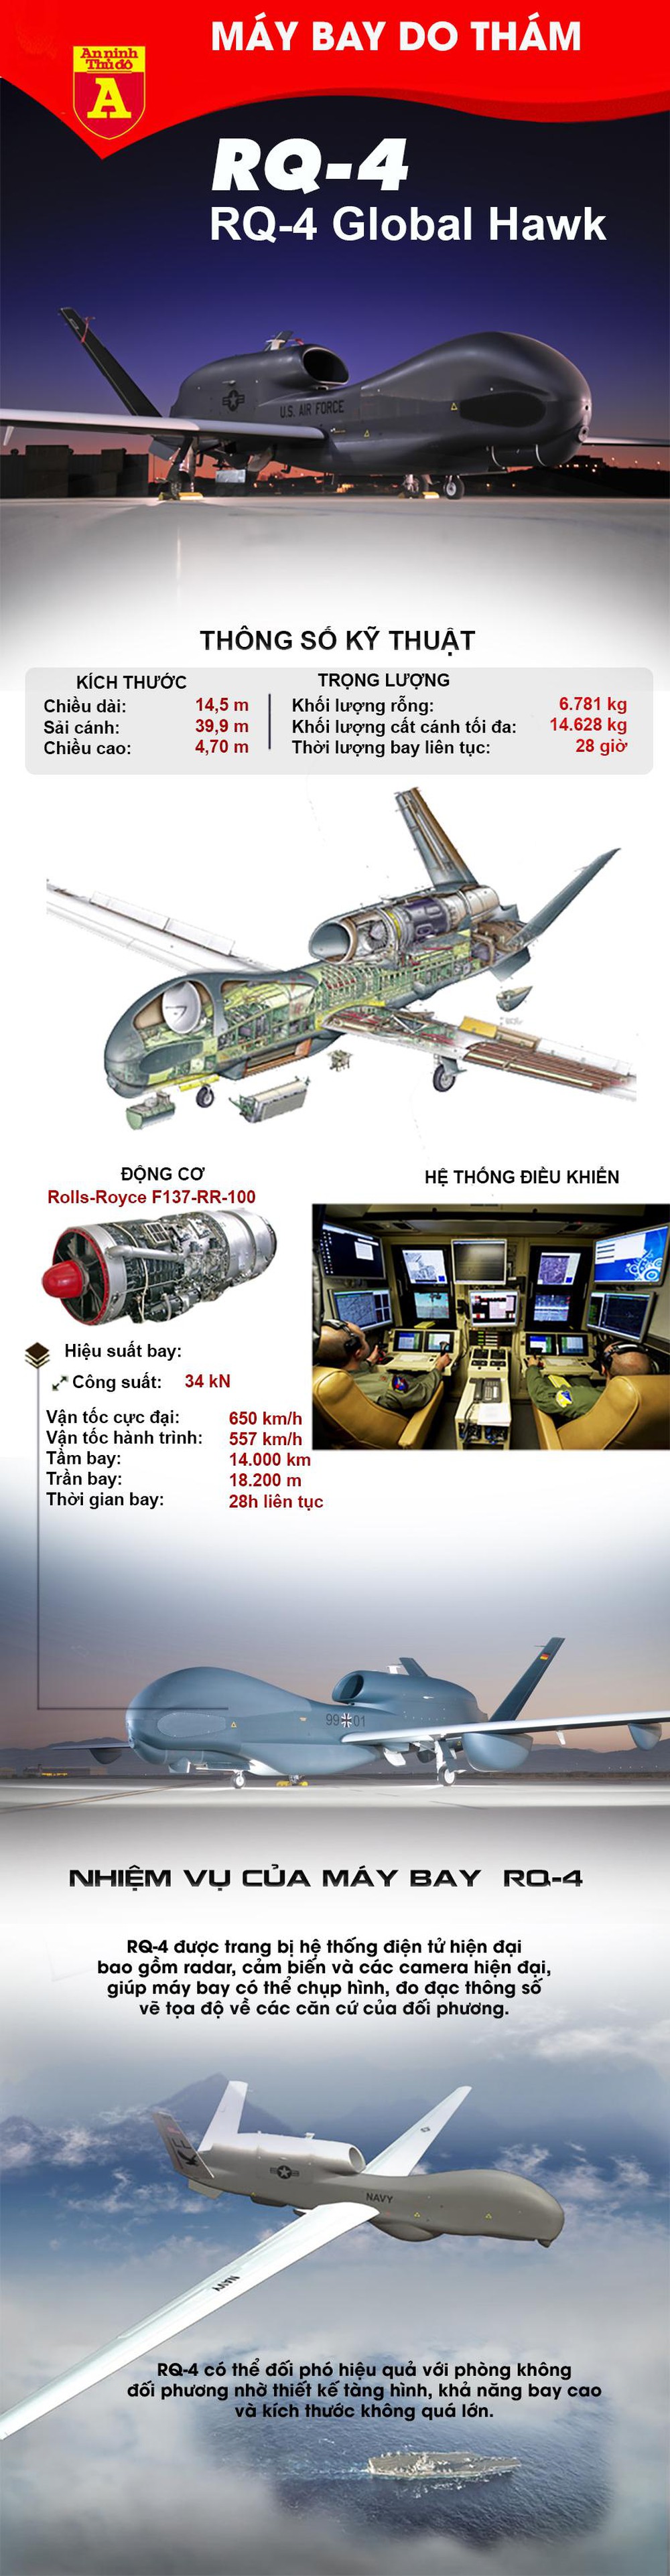 RQ-4 Global Hawk - Siêu máy bay do thám không người lái hiện đại nhất của quân đội Mỹ - Ảnh 1